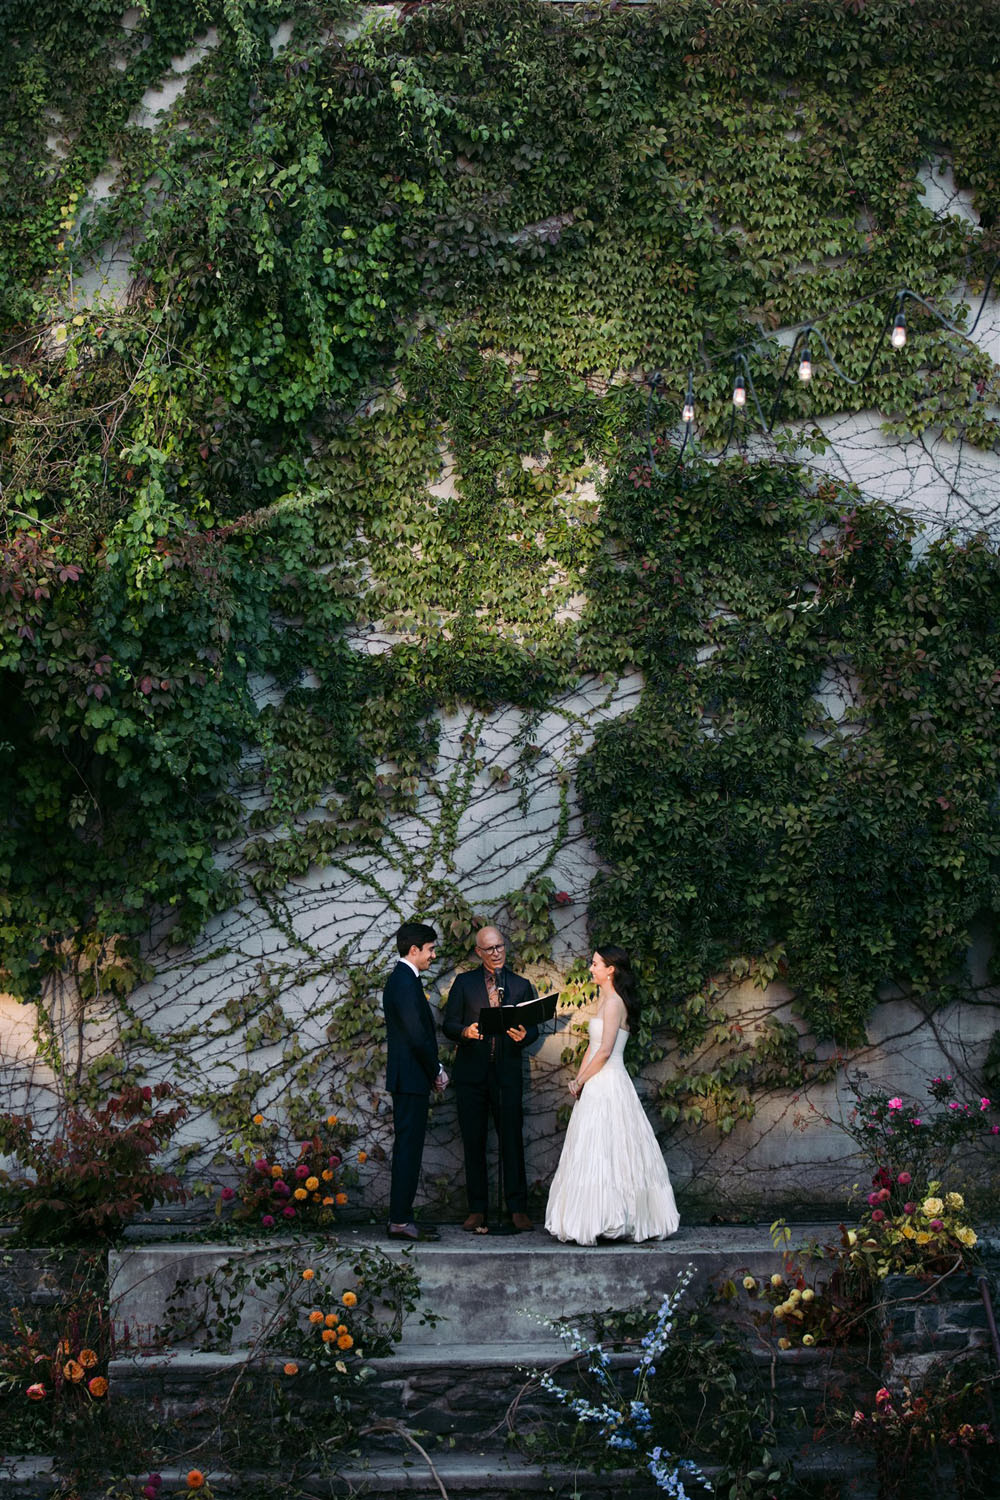 Two architects' design-focused secret garden wedding